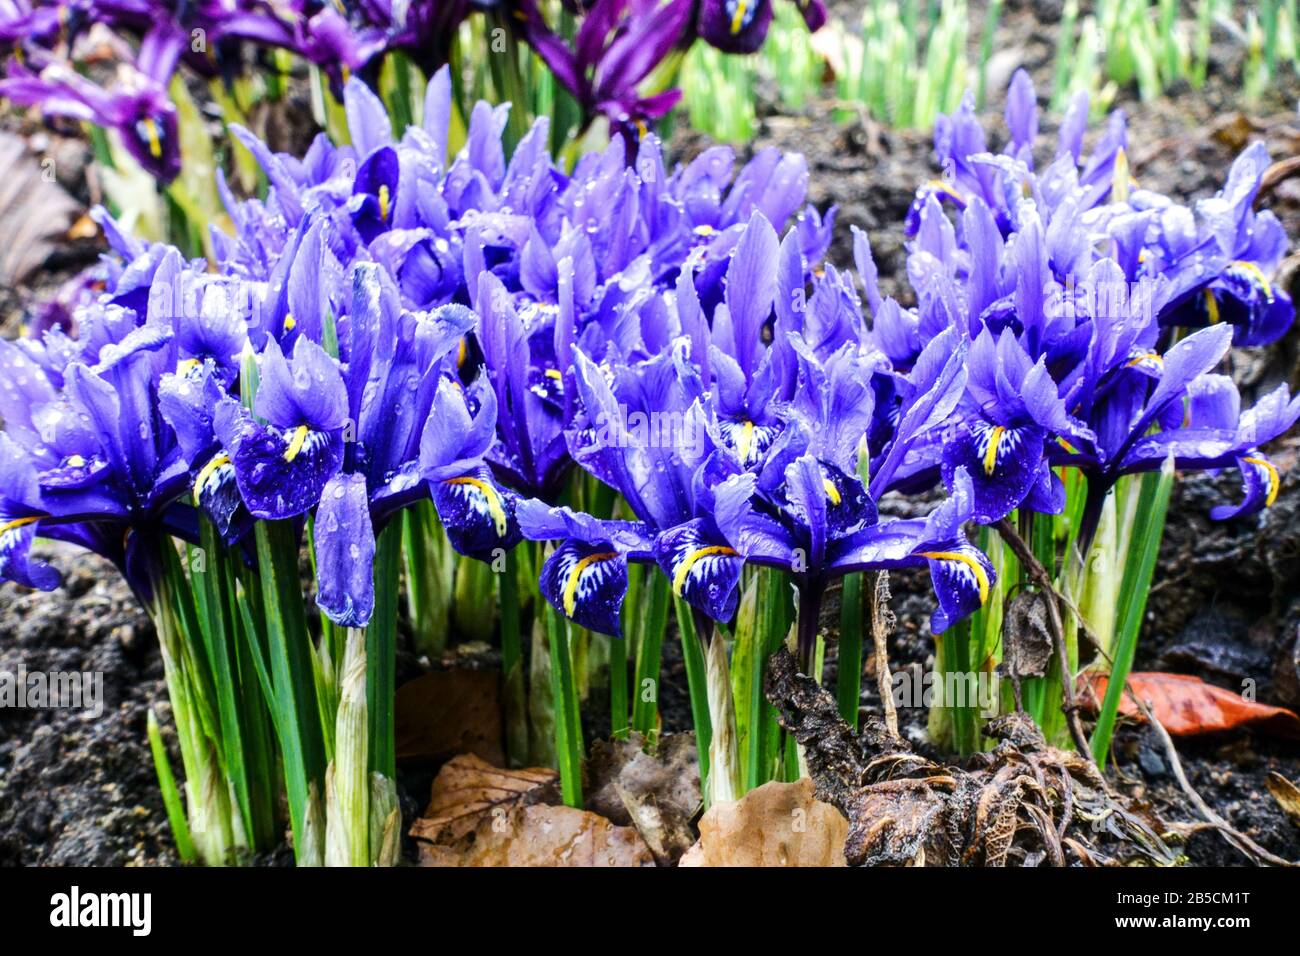 Group of blue dwarf irises 'Harmony' Stock Photo